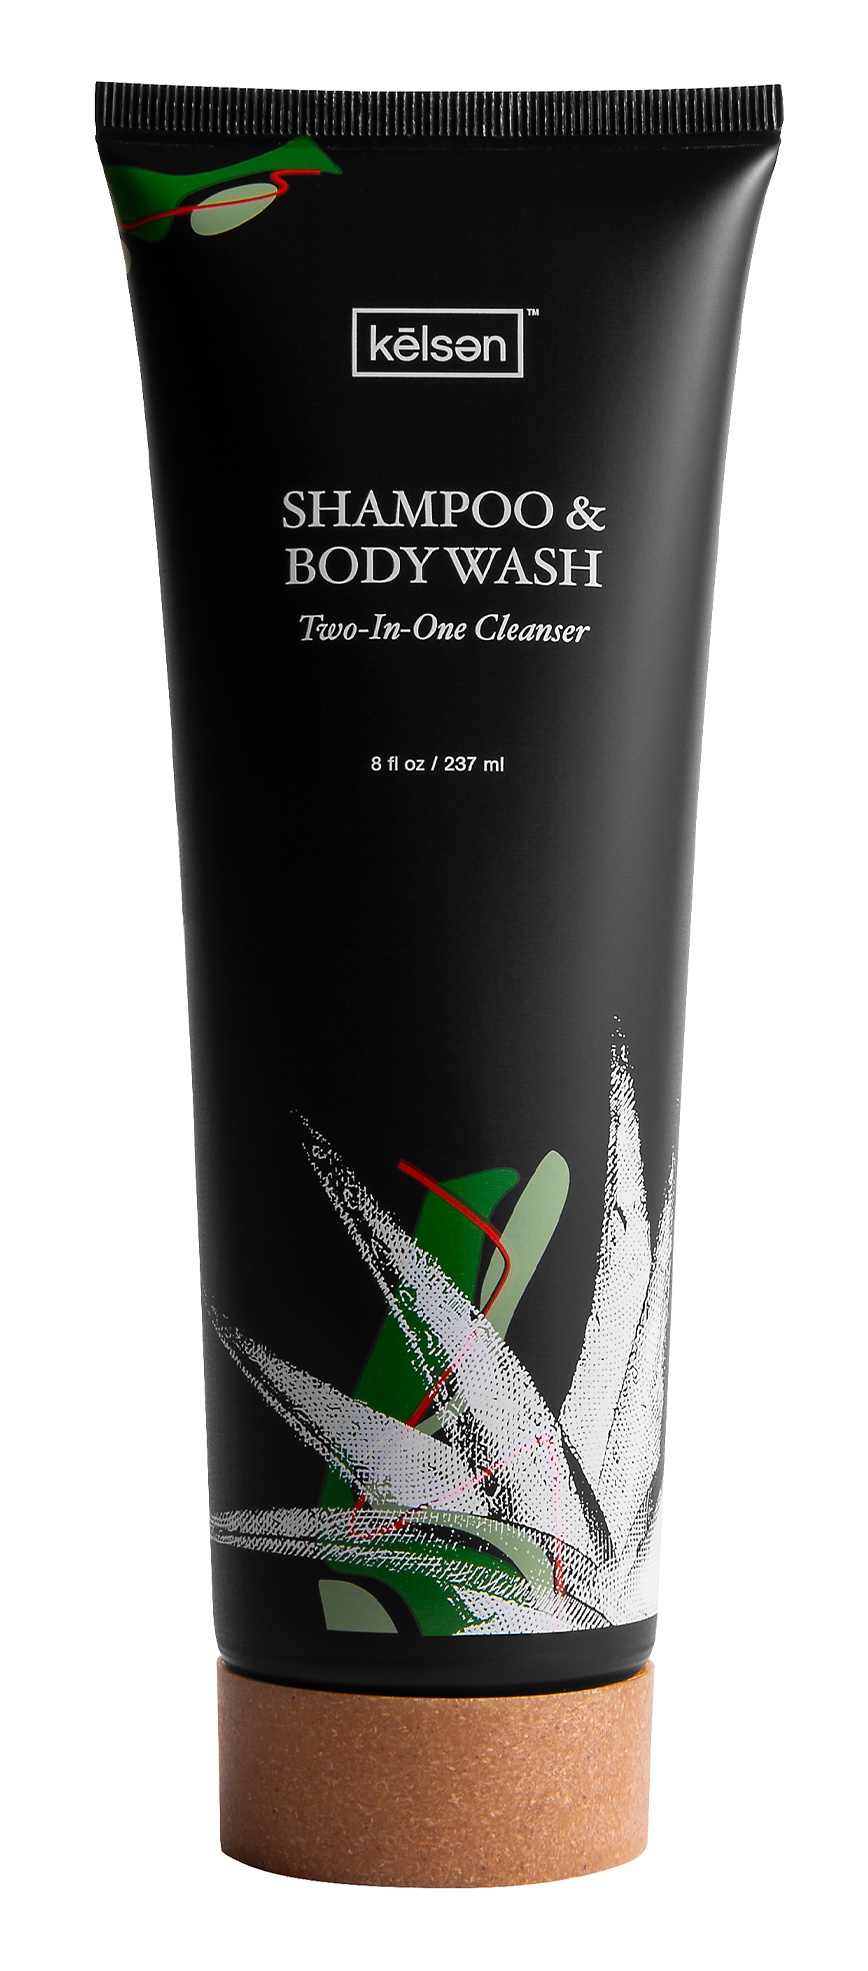 Kelsen Shampoo & Body Wash Two-In-One